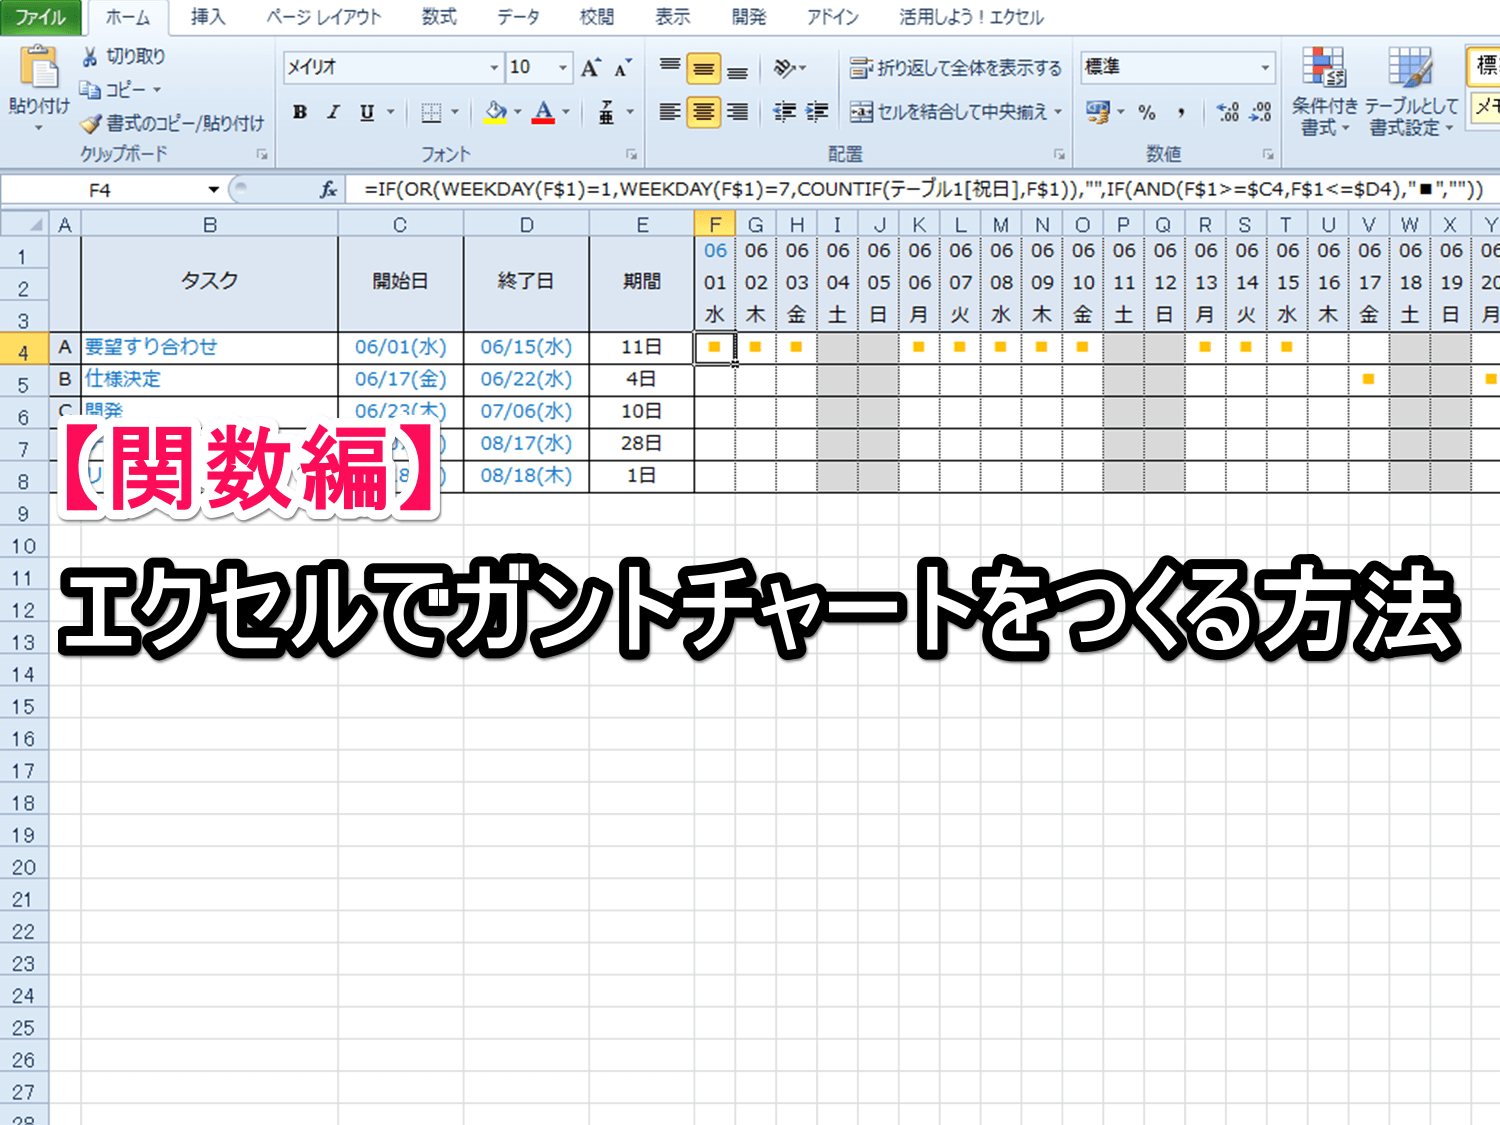 関数編 エクセルでガントチャートをつくる方法 Excelを制する者は人生を制す No Excel No Life